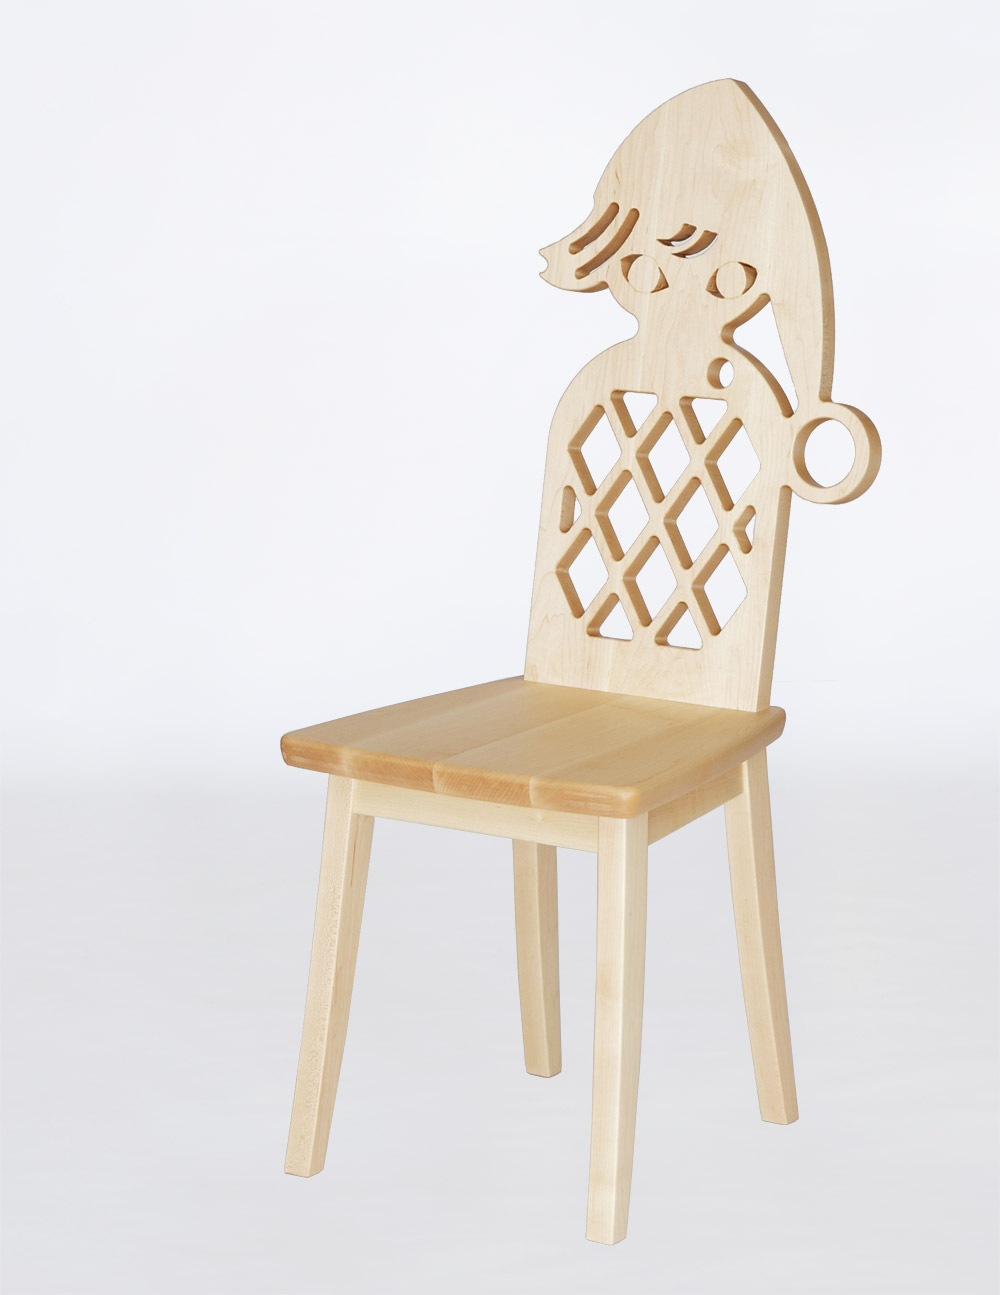 藤城清治さんの小人をモチーフにしたメープルの椅子